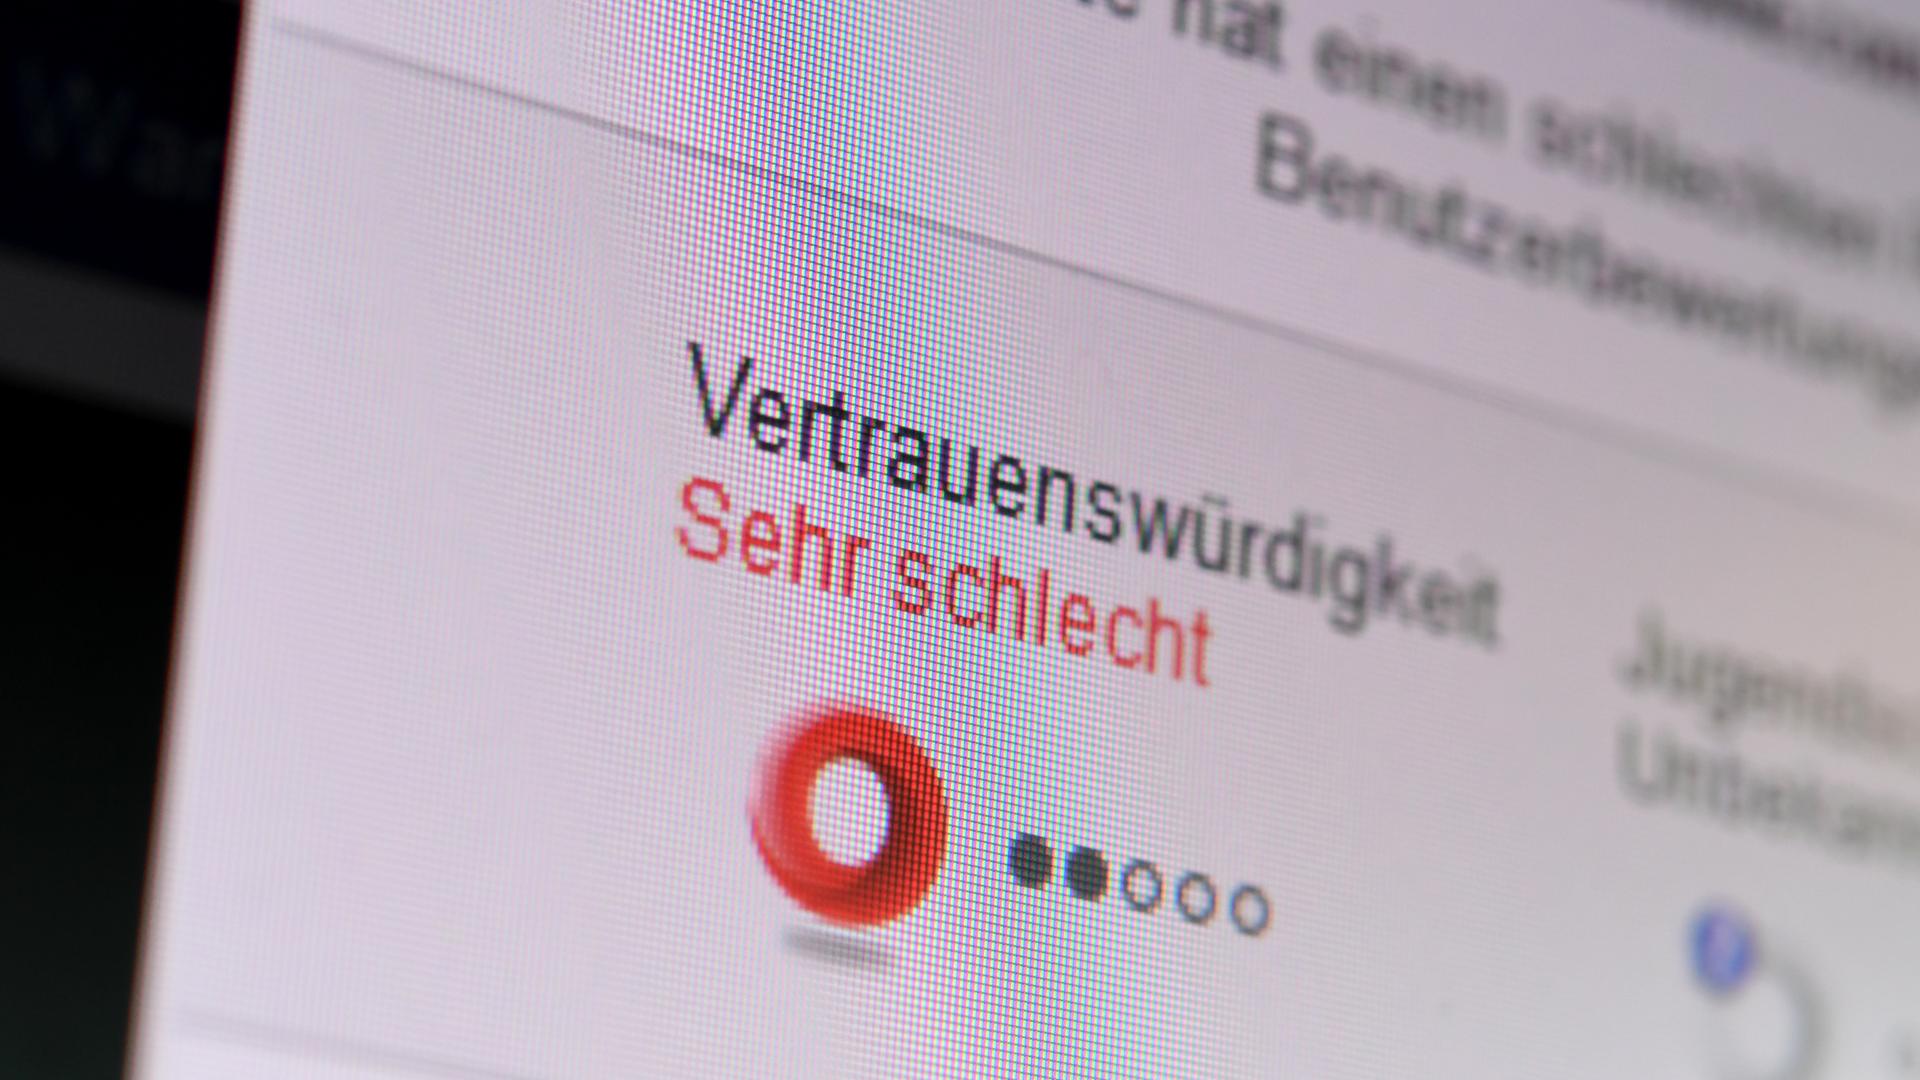 Das Browser-Add-On Web of Trust (WOT) zeigt am 02.06.2016 in Berlin bei einer Internetrecherche an, dass eine der angezeigten Websites nicht vertrauenswürdig ist. 